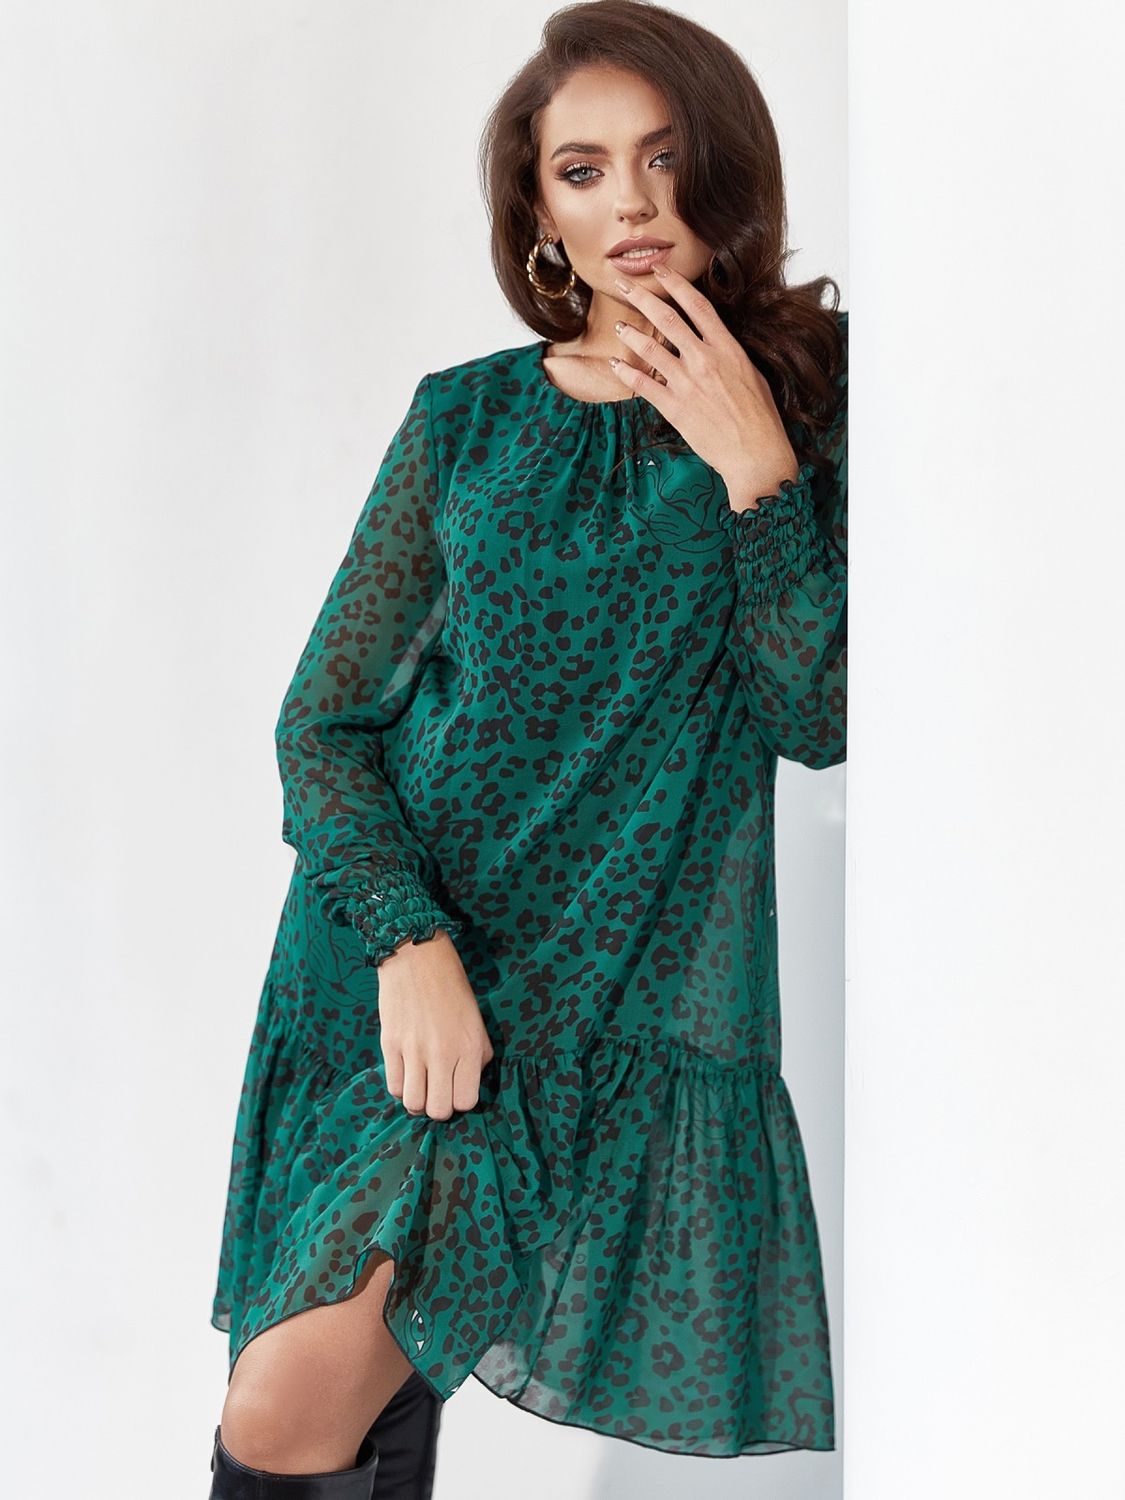 Жіночна шифонова сукня трапеція на весну зелене - фото